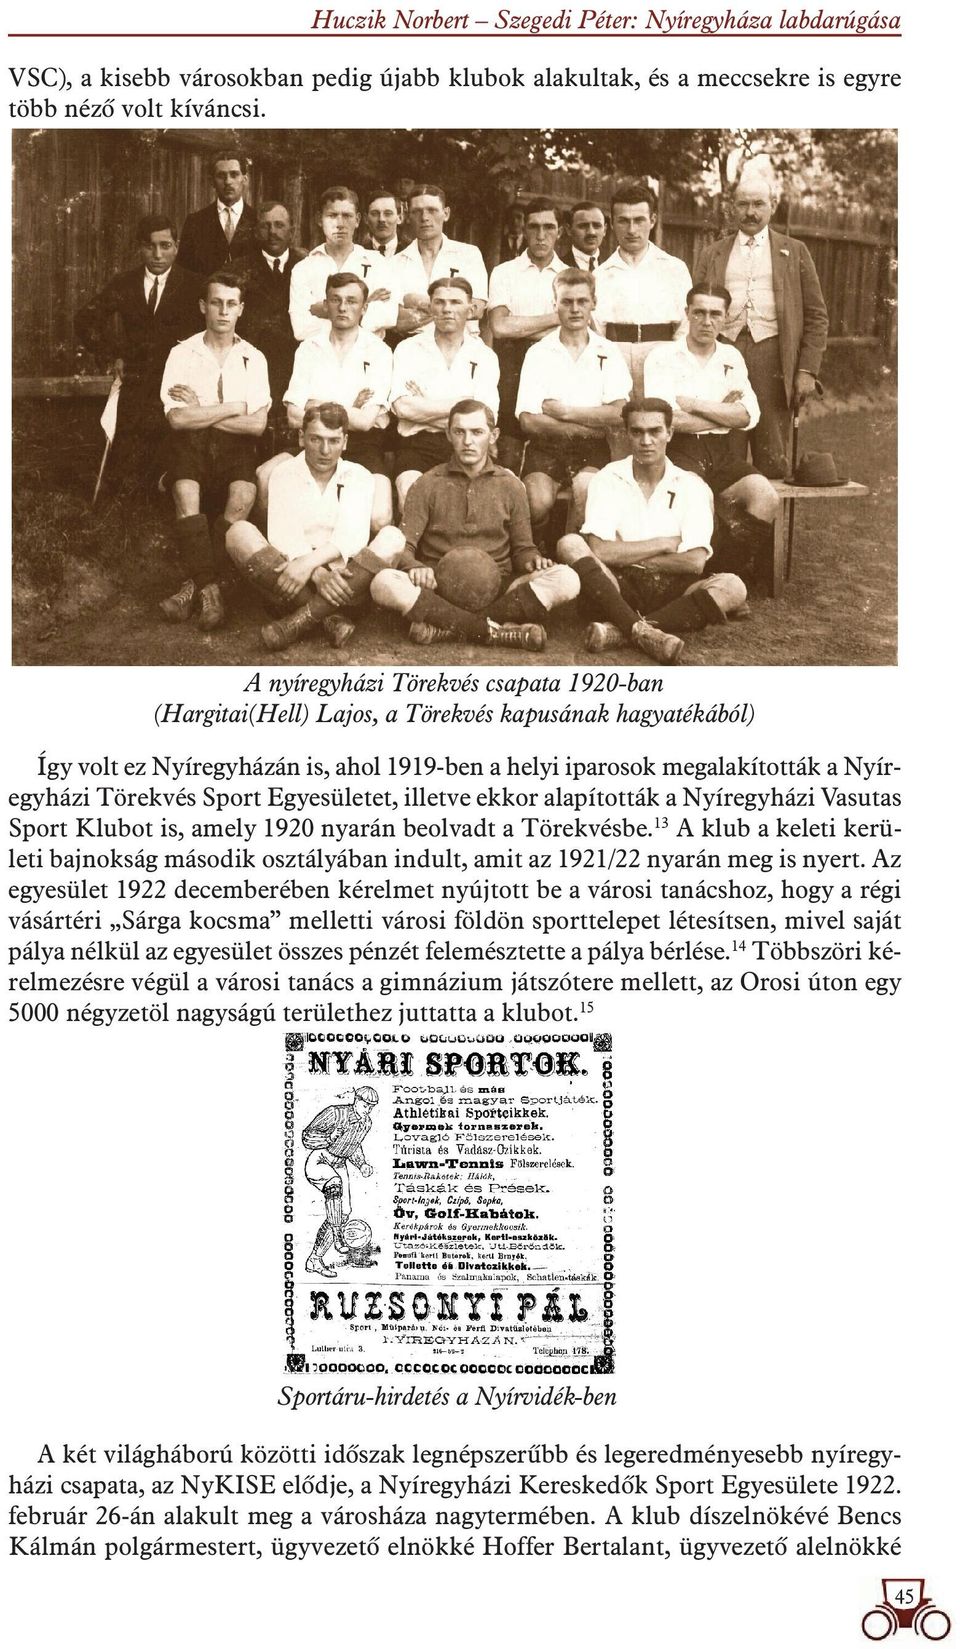 Sport Egyesületet, illetve ekkor alapították a Nyíregyházi Vasutas Sport Klubot is, amely 1920 nyarán beolvadt a Törekvésbe.